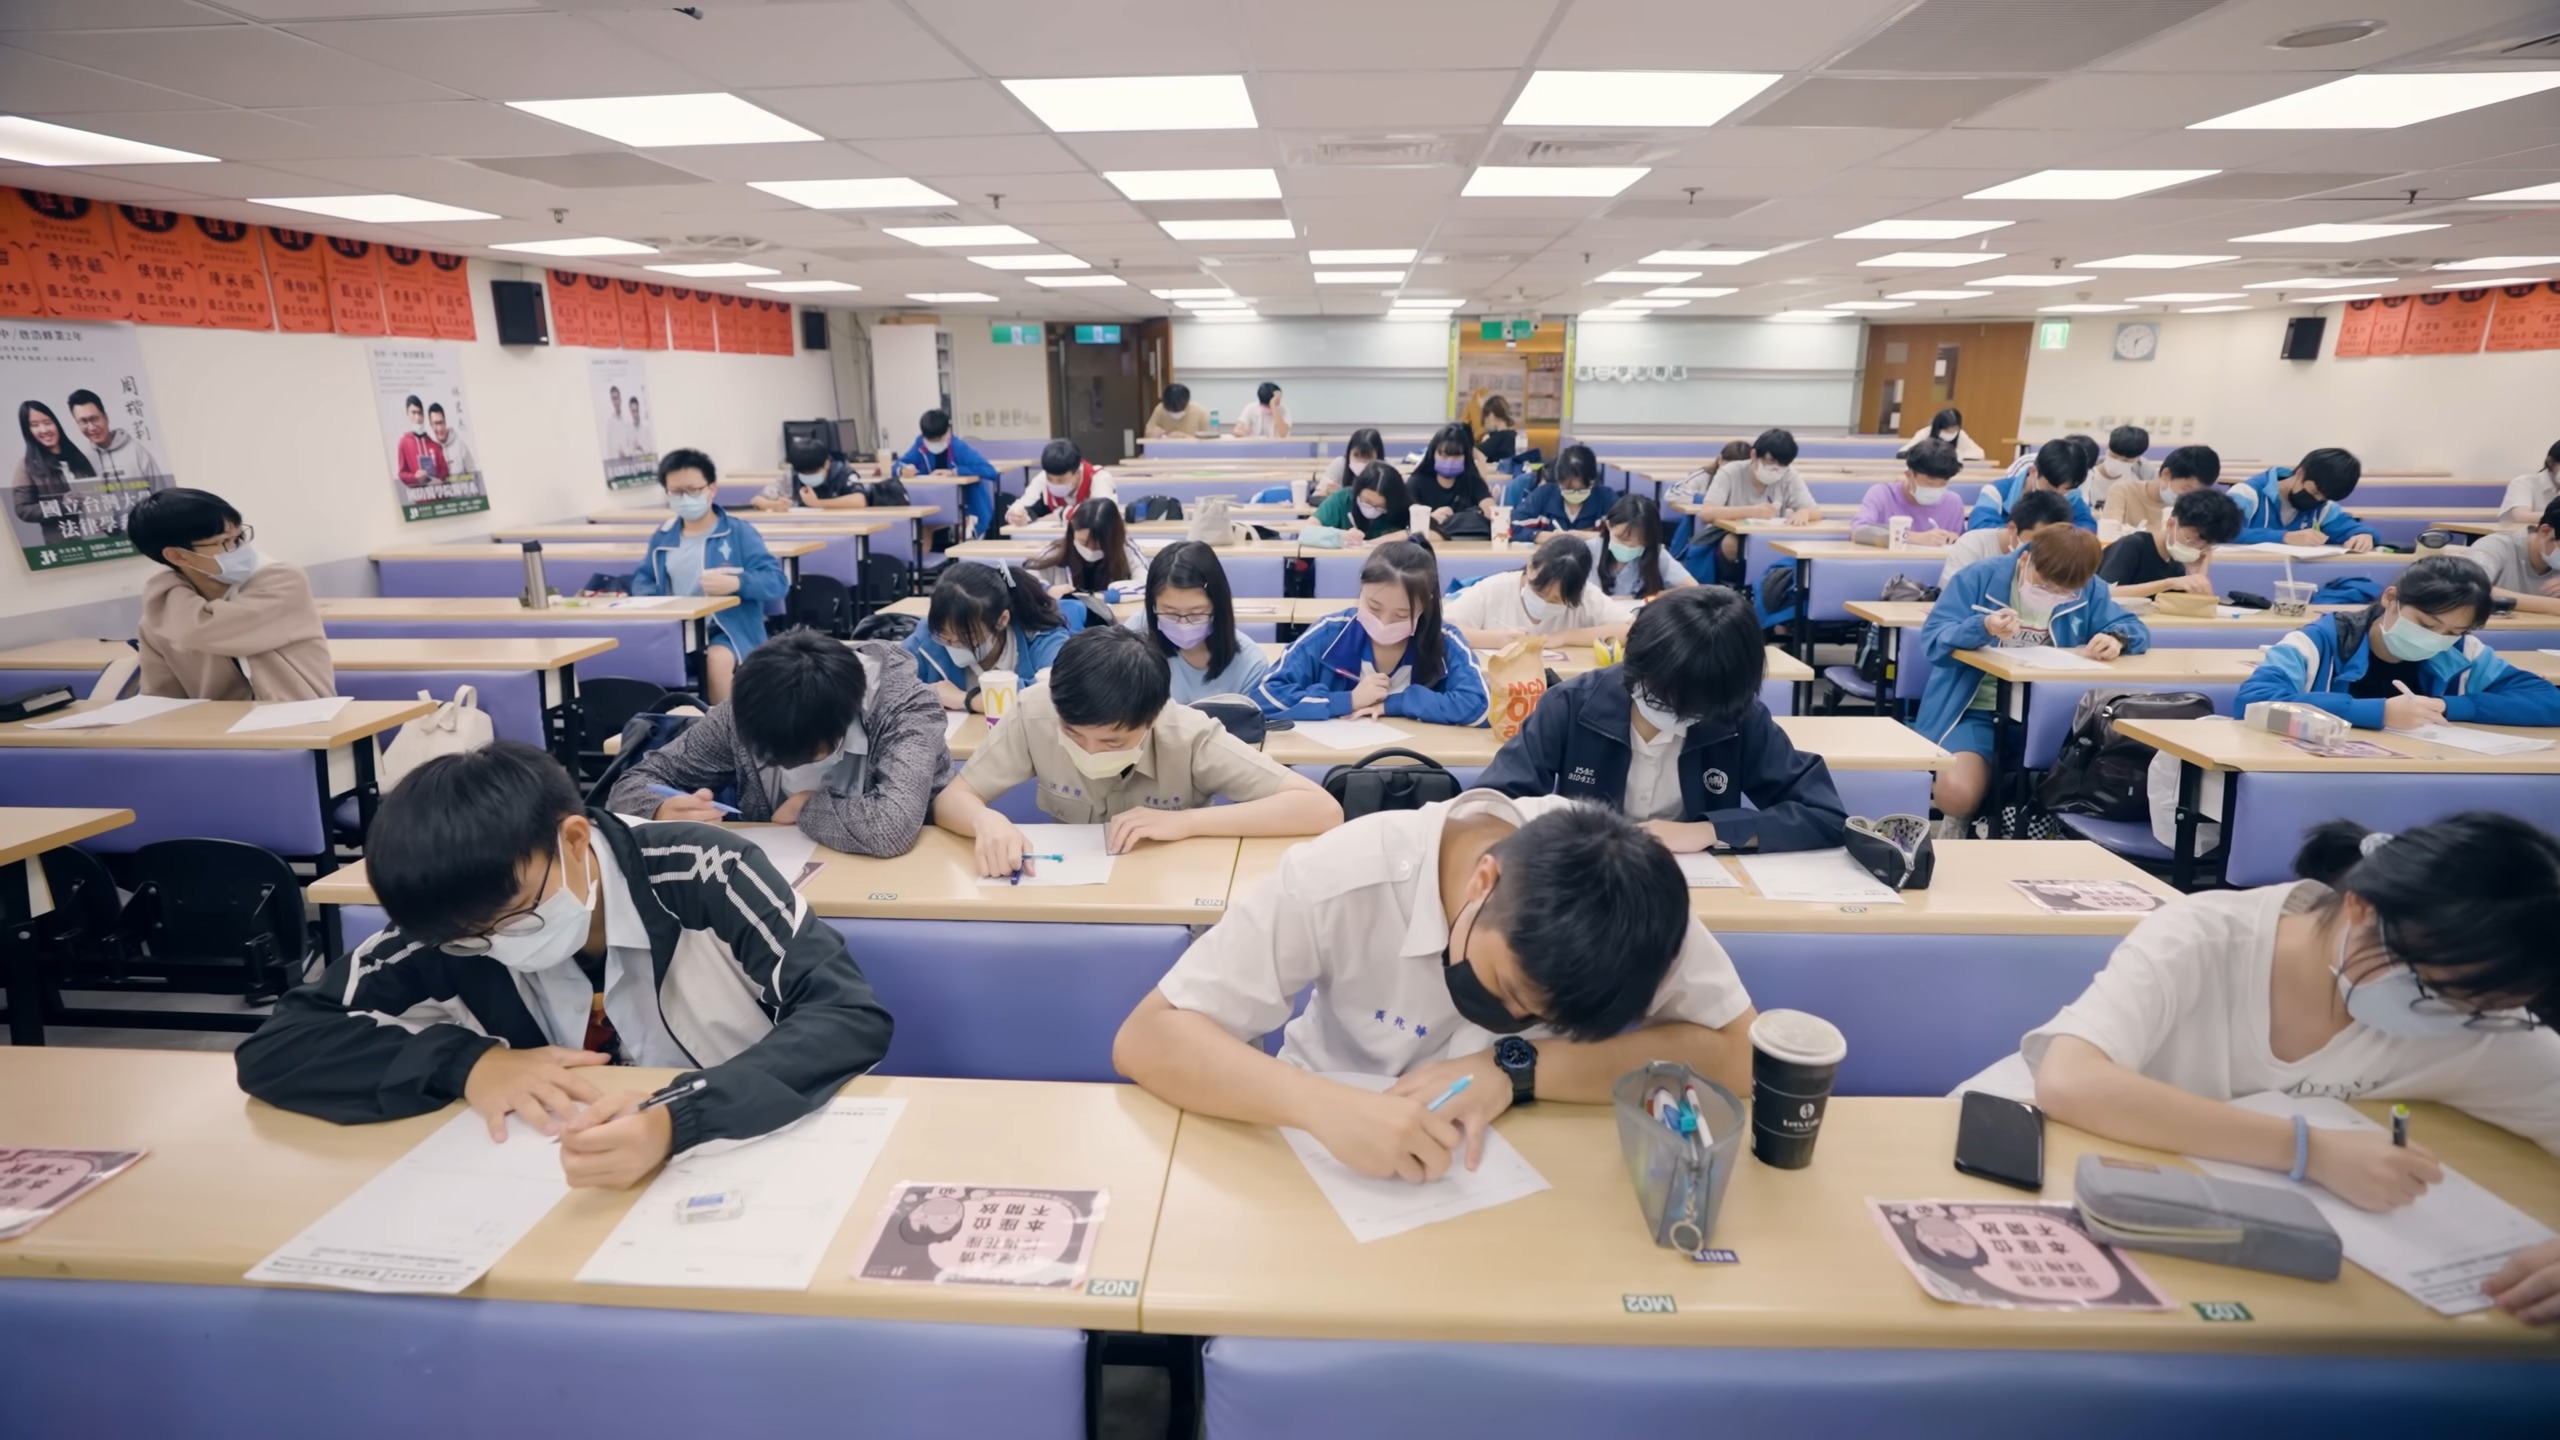 South Korea Education